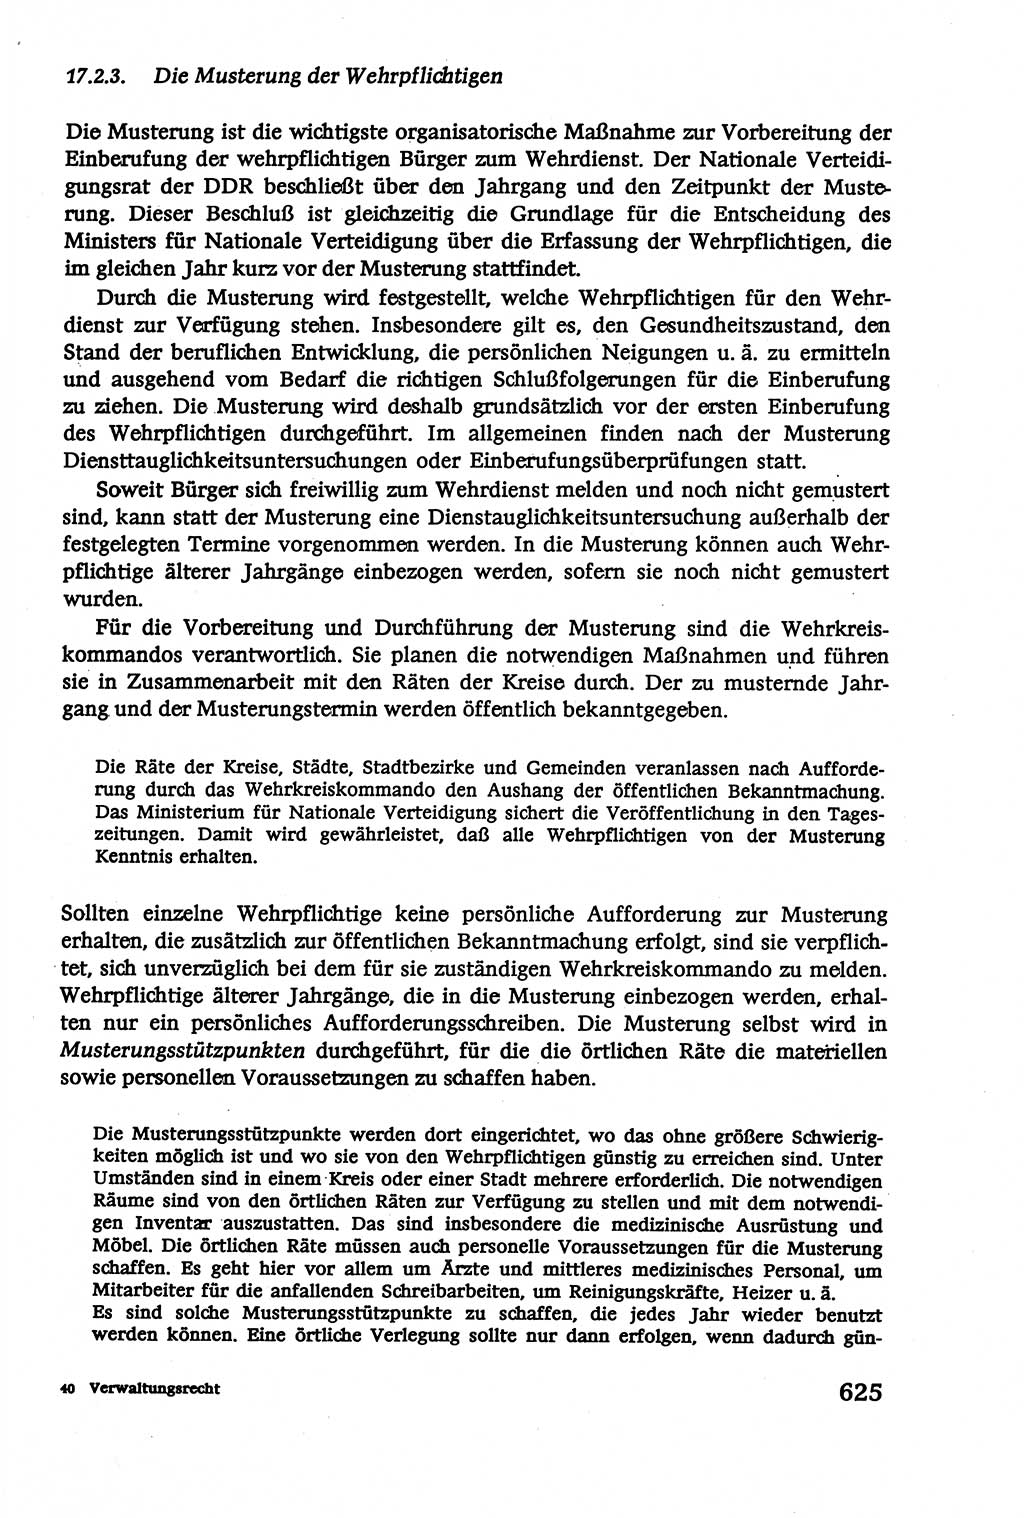 Verwaltungsrecht [Deutsche Demokratische Republik (DDR)], Lehrbuch 1979, Seite 625 (Verw.-R. DDR Lb. 1979, S. 625)